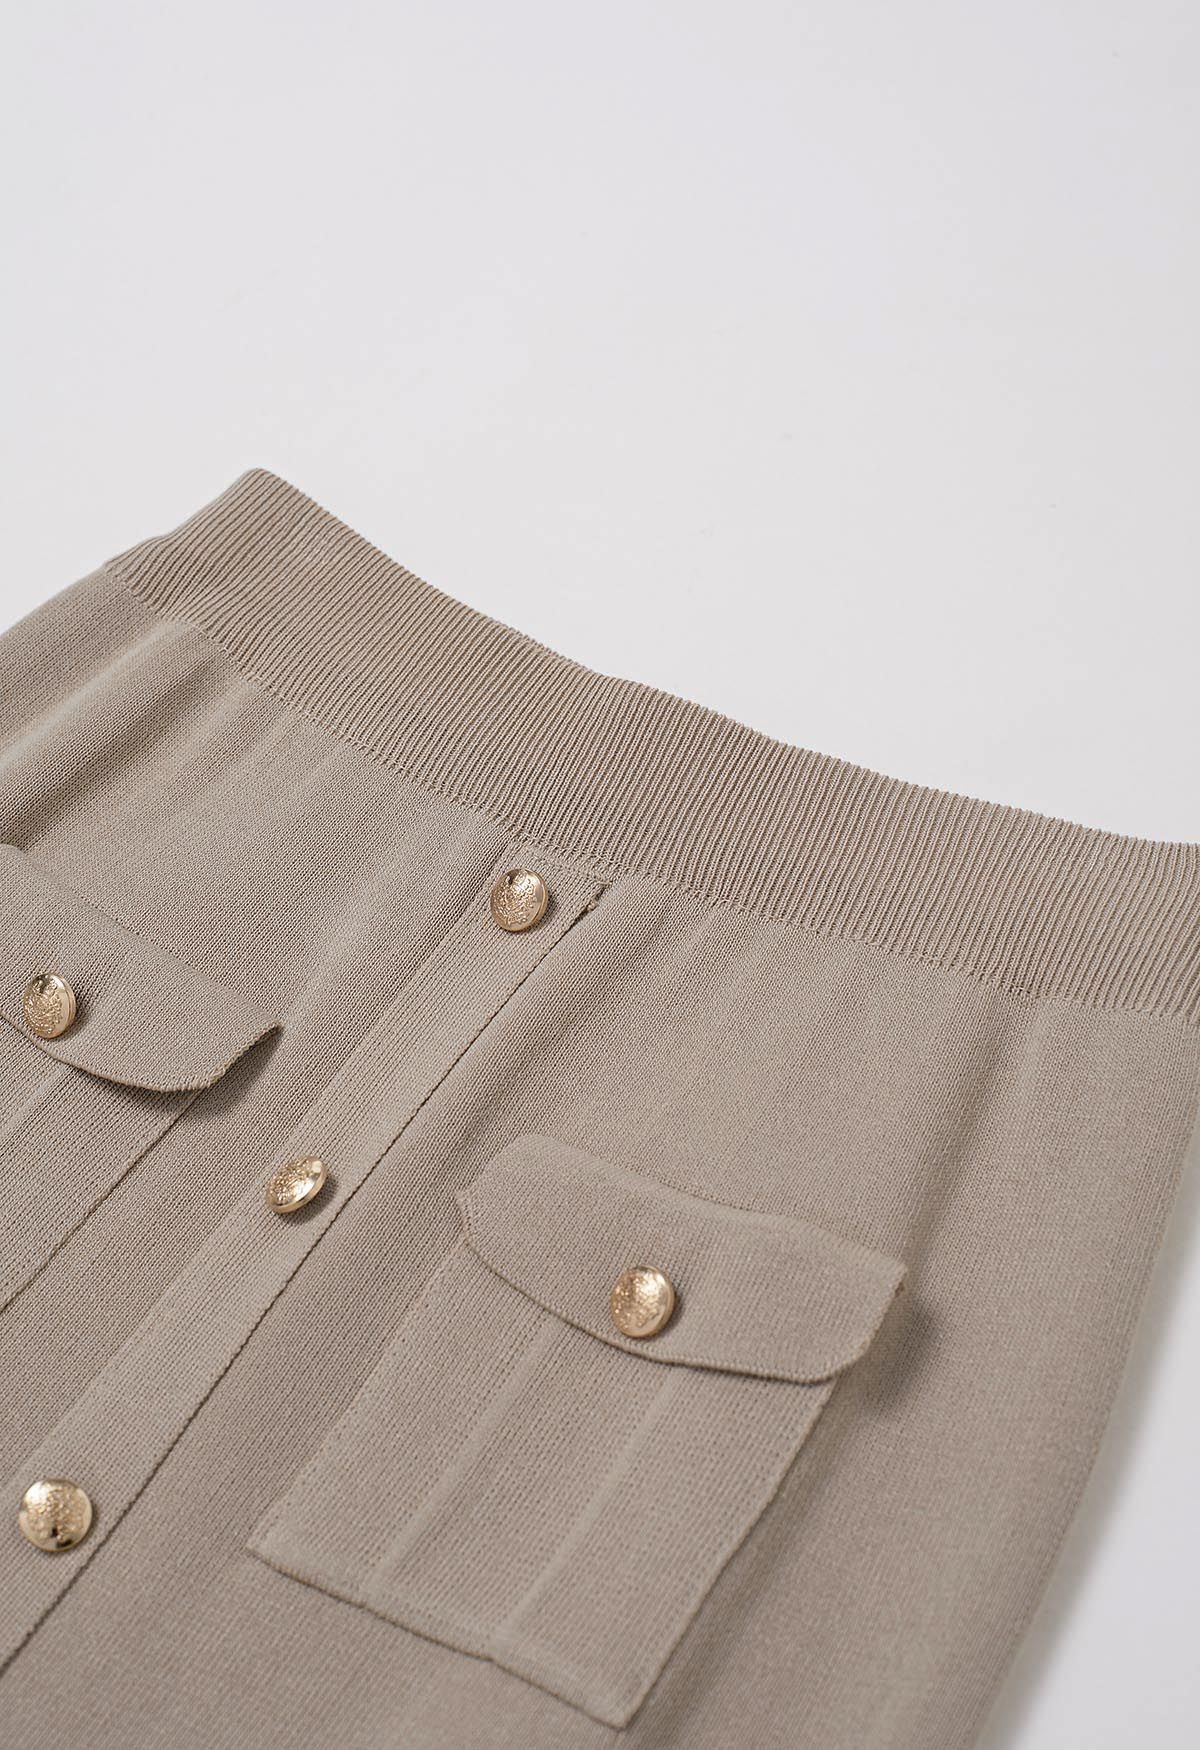 Conjunto de falda midi y top de punto de manga corta con botones destacados en color topo